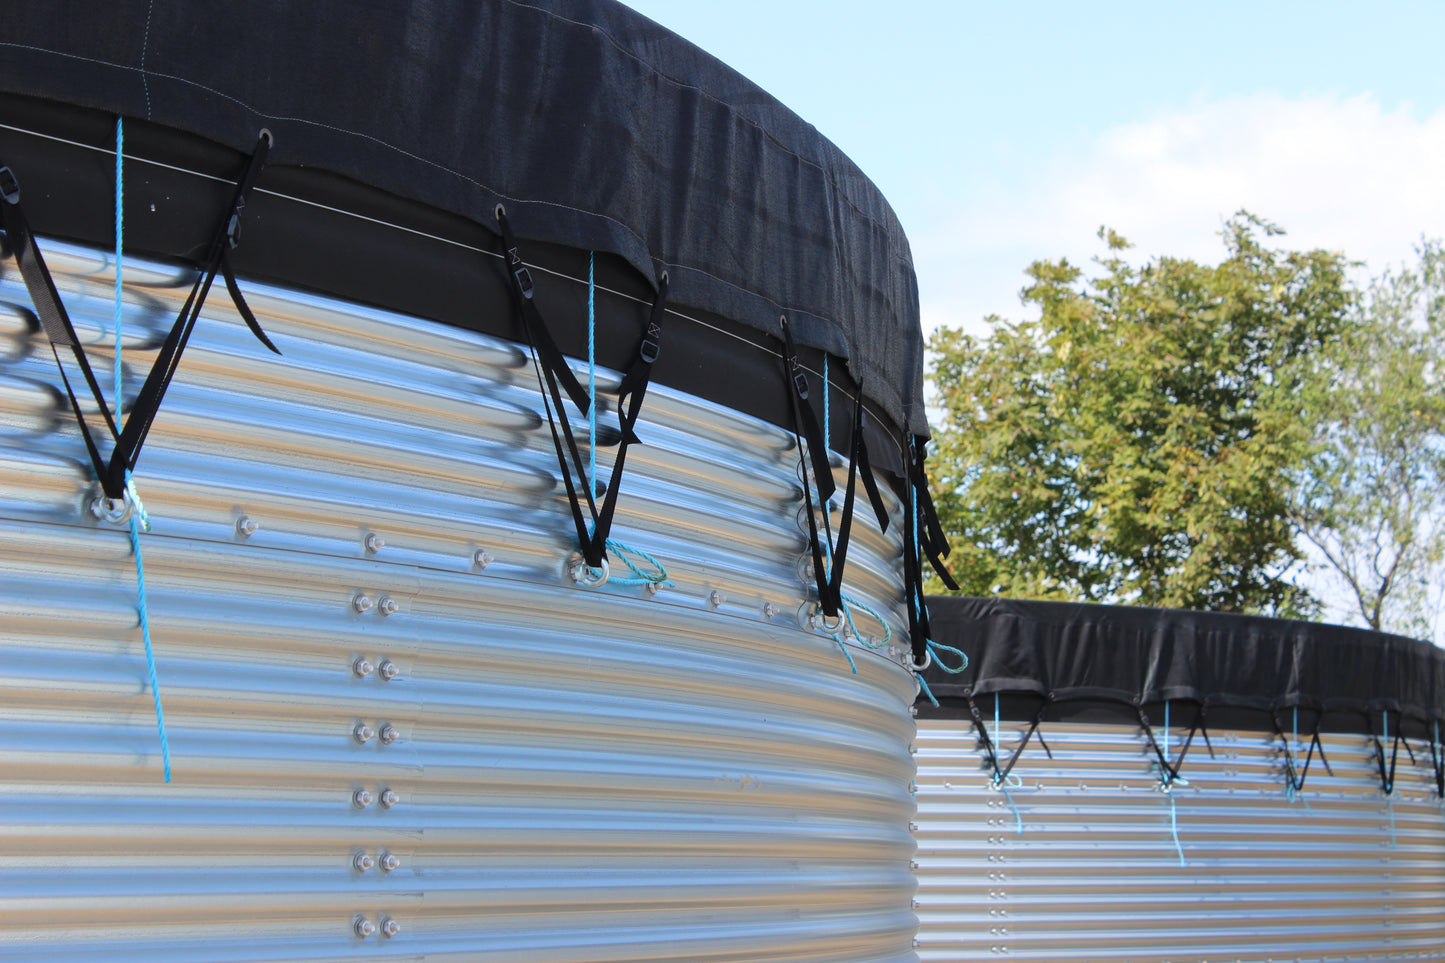 49,000 litre Galvanised Steel Water Tank